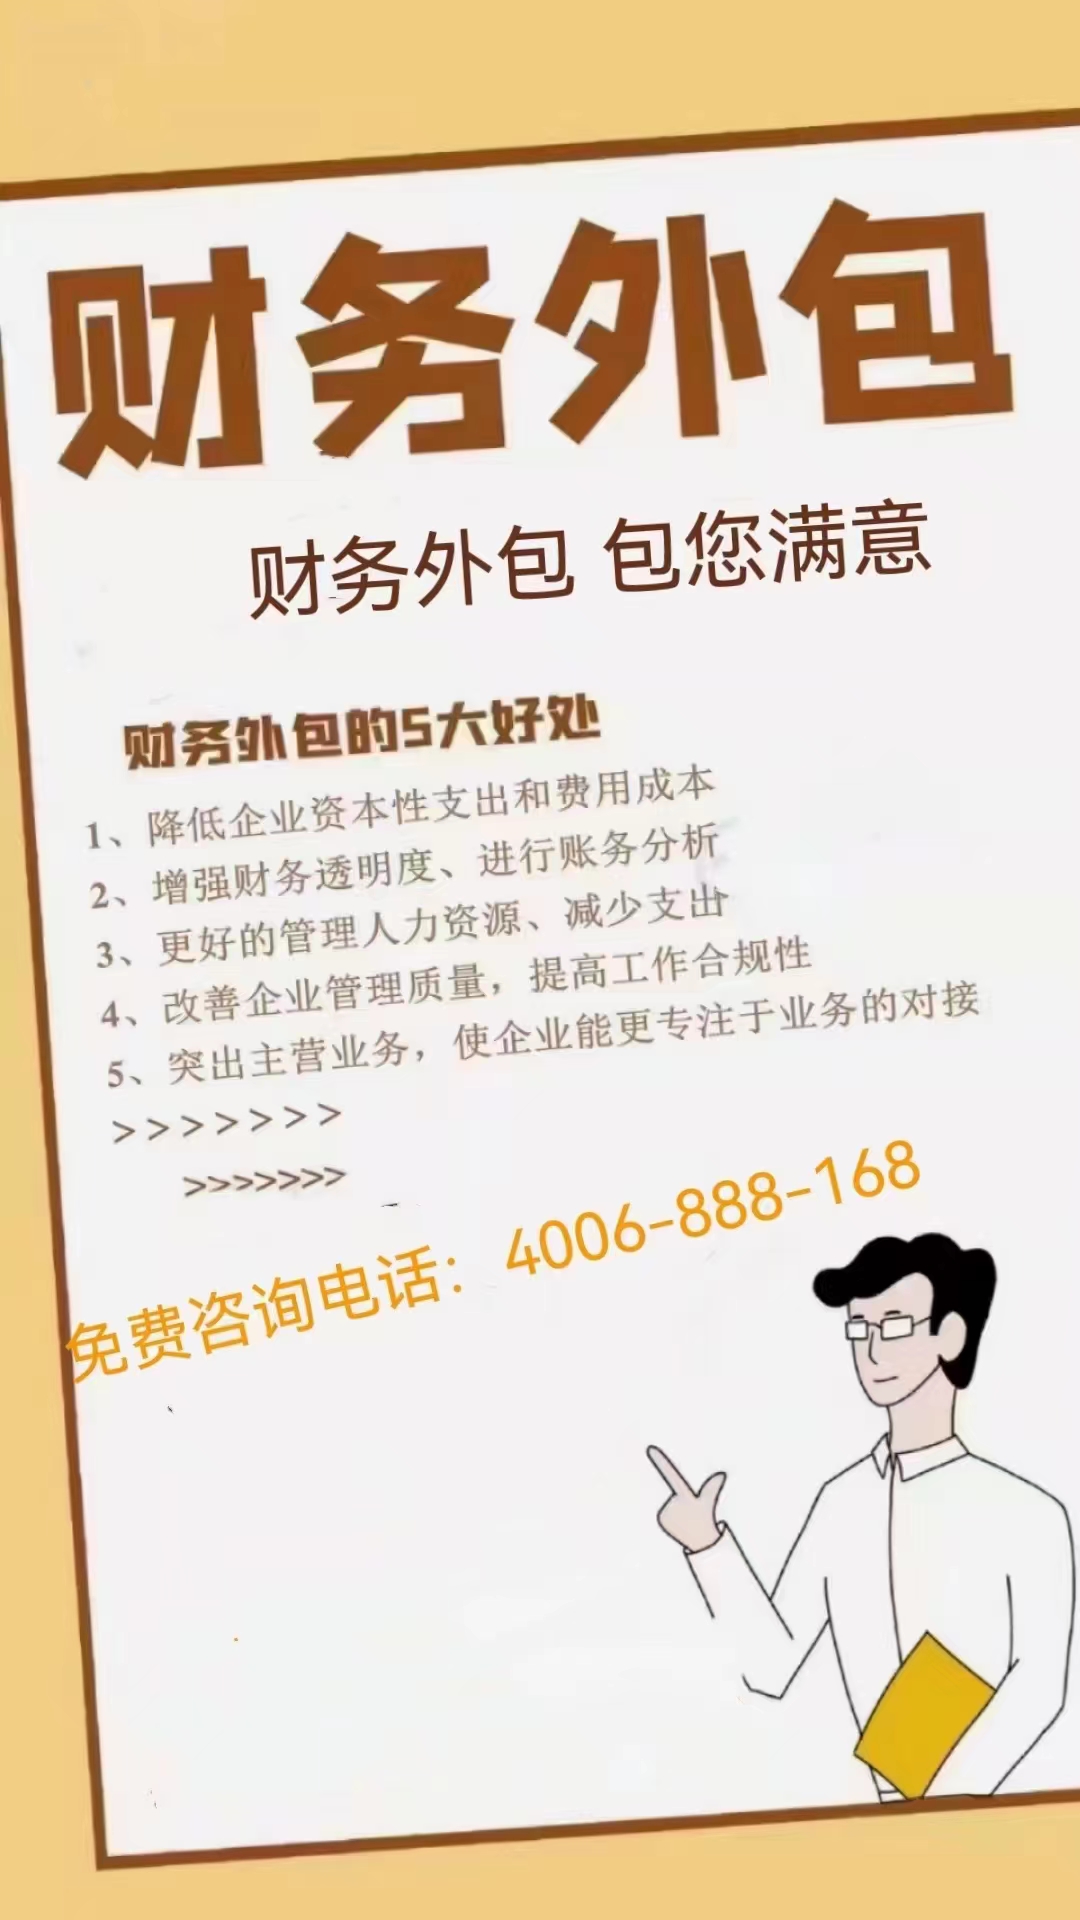 郑州机械设备租赁业用财务外包精细核算流程